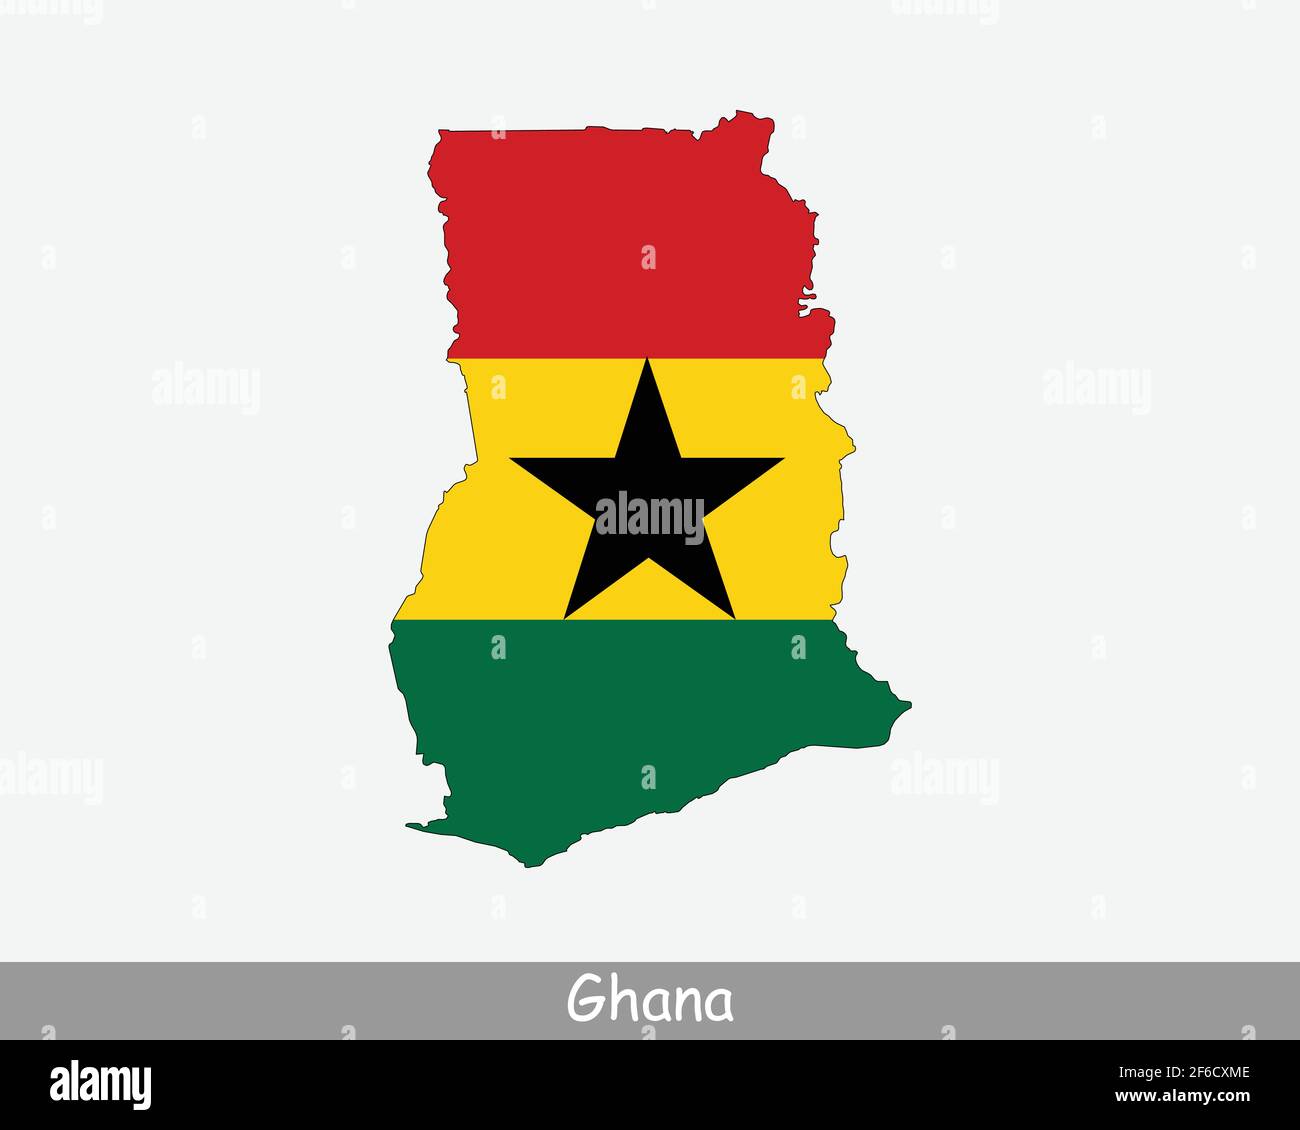 Drapeau de carte du Ghana. Carte de la République du Ghana avec le drapeau national ghanéen isolé sur fond blanc. Illustration vectorielle. Illustration de Vecteur